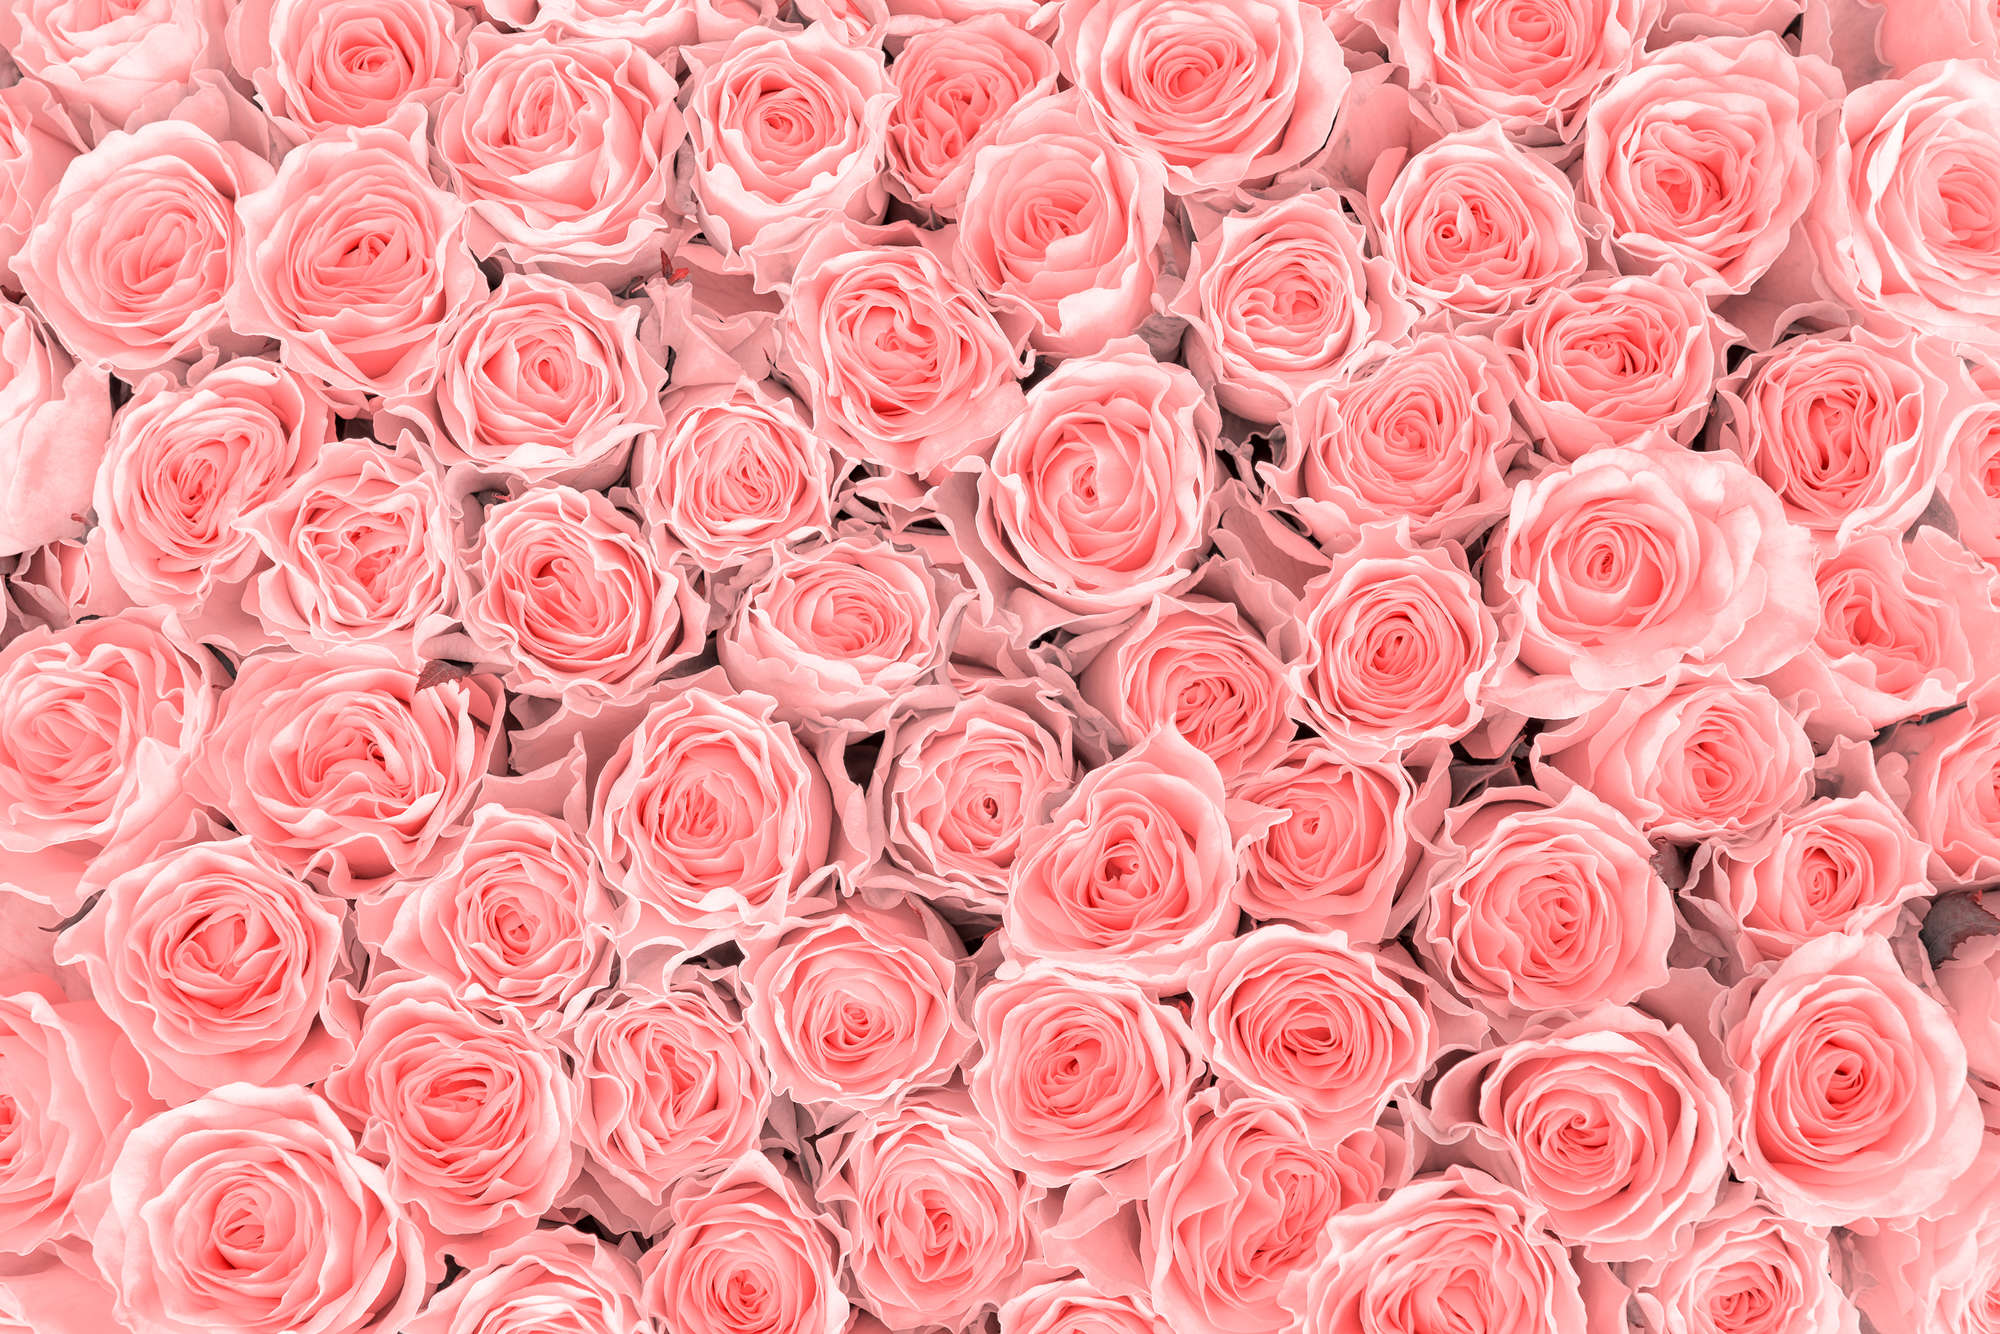             Mural de plantas rosas sobre vellón liso mate
        